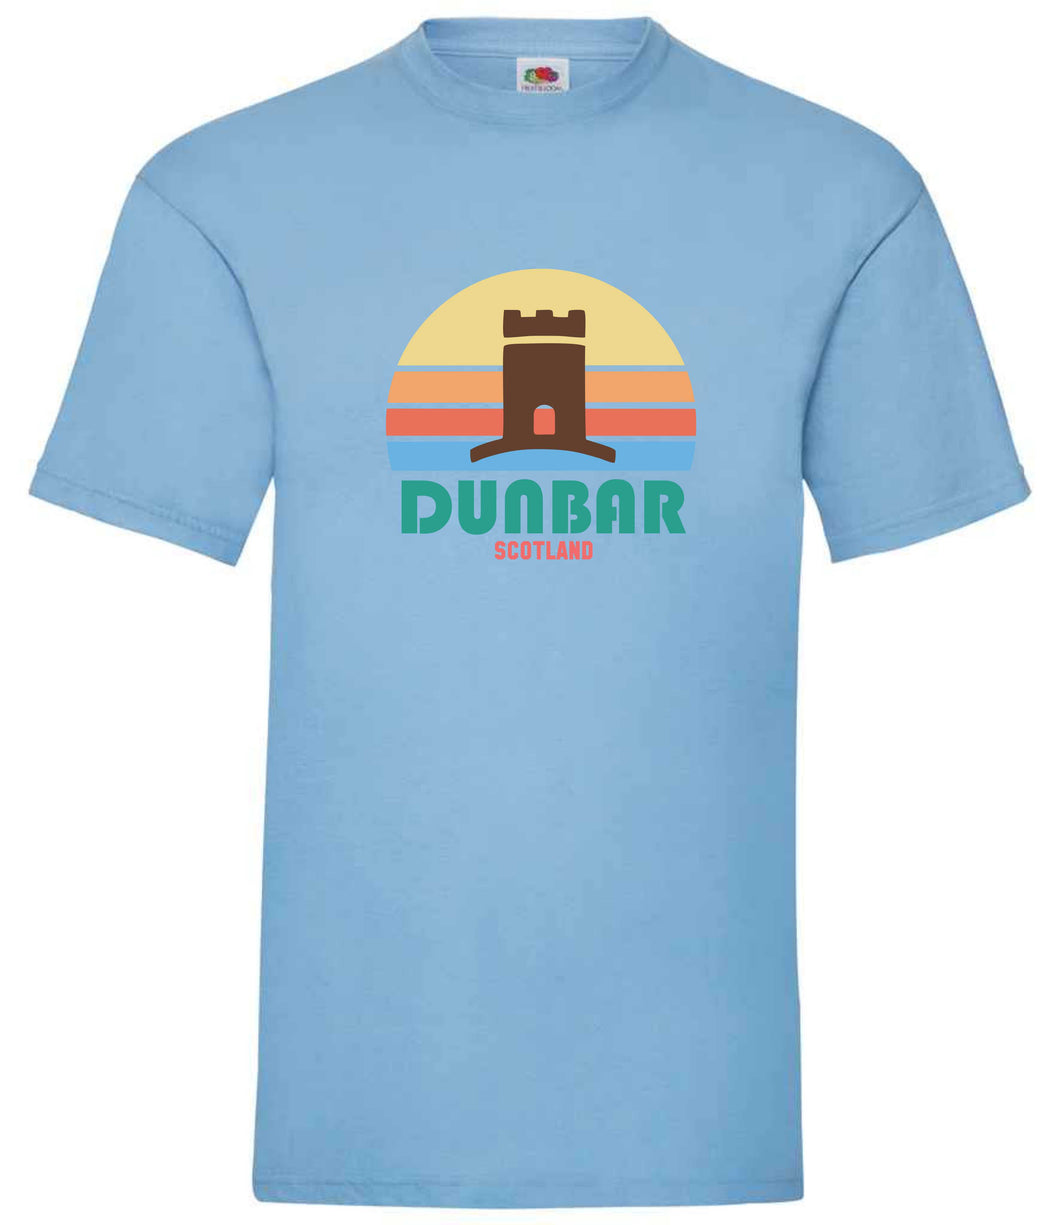 Dunbar Castle Sunset T-Shirt